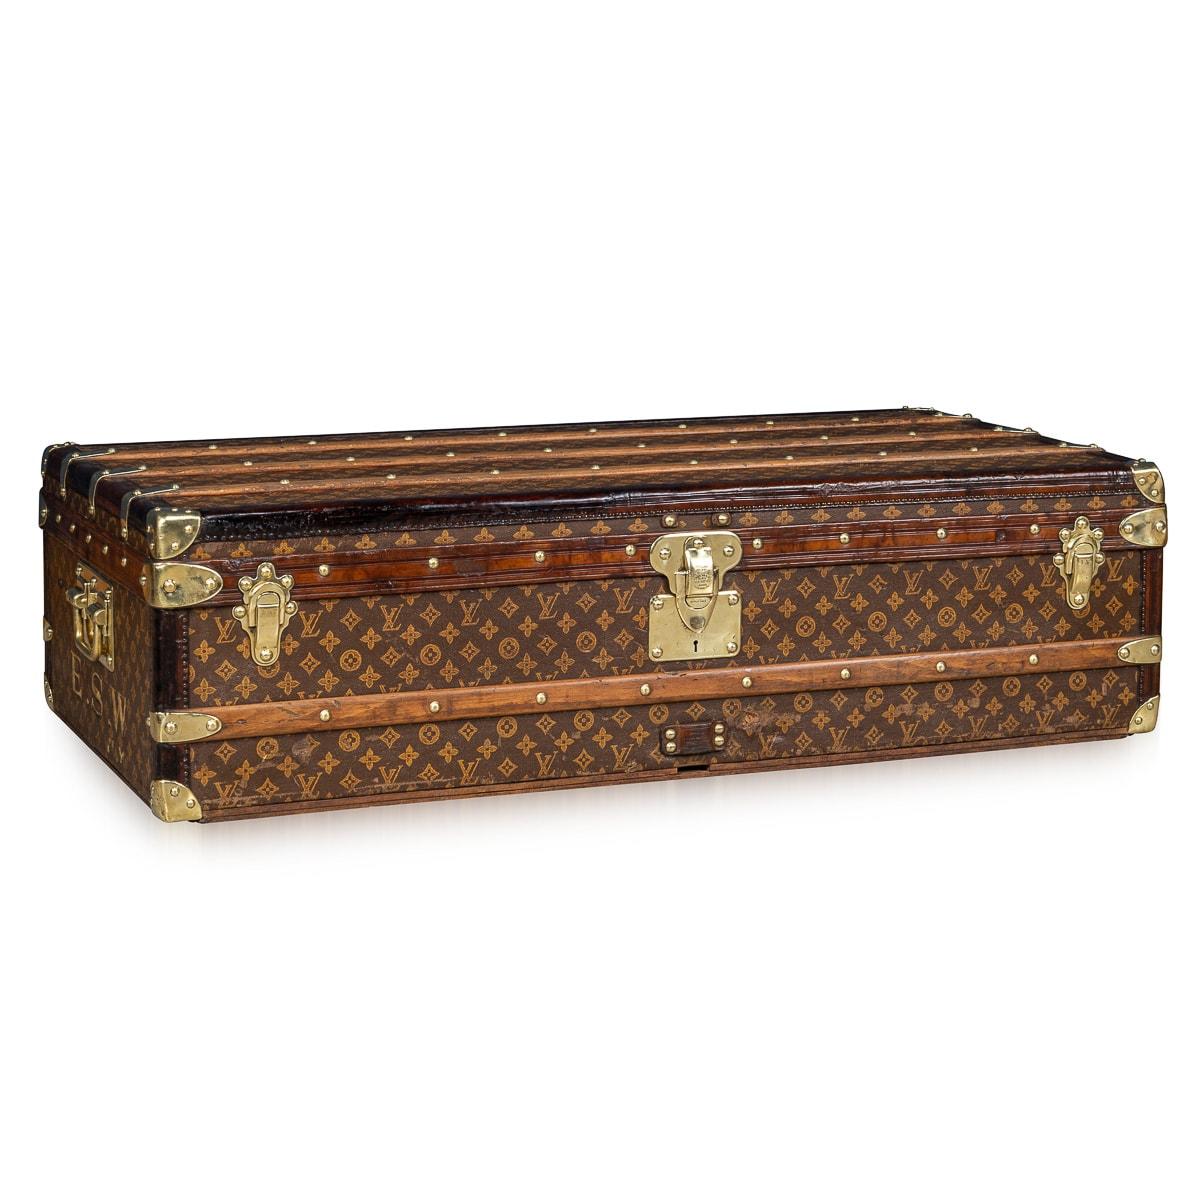 Eine exquisite und vollständige Louis Vuitton-Truhe aus der ersten Hälfte des 20. Jahrhunderts. Der Koffer ist ein unverzichtbarer Gegenstand für die reisende Elite seiner Zeit. Er ist mit dem kultigen LV-Monogramm aus Segeltuch verziert, das von